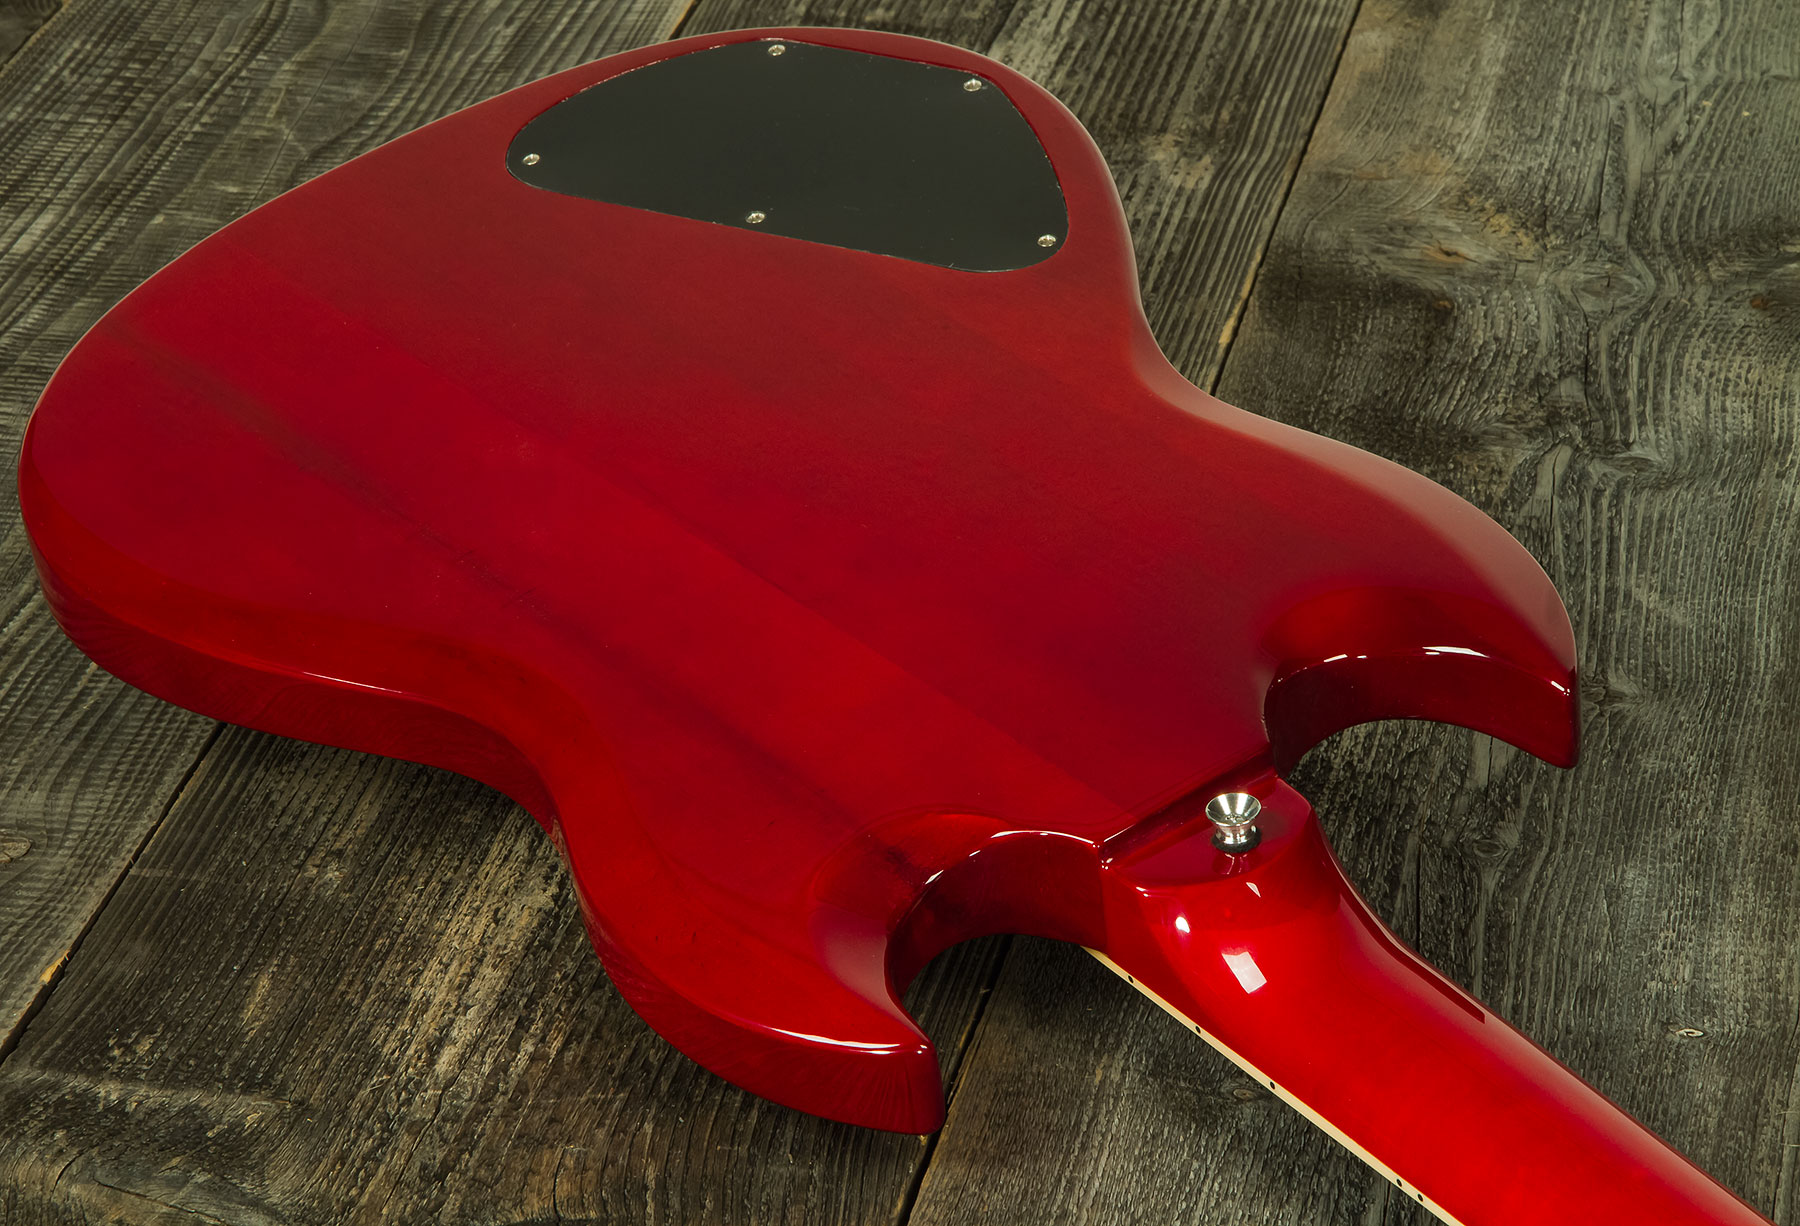 Eastone Sdc70 Hh Ht Pur - Red - Guitarra eléctrica de doble corte - Variation 2